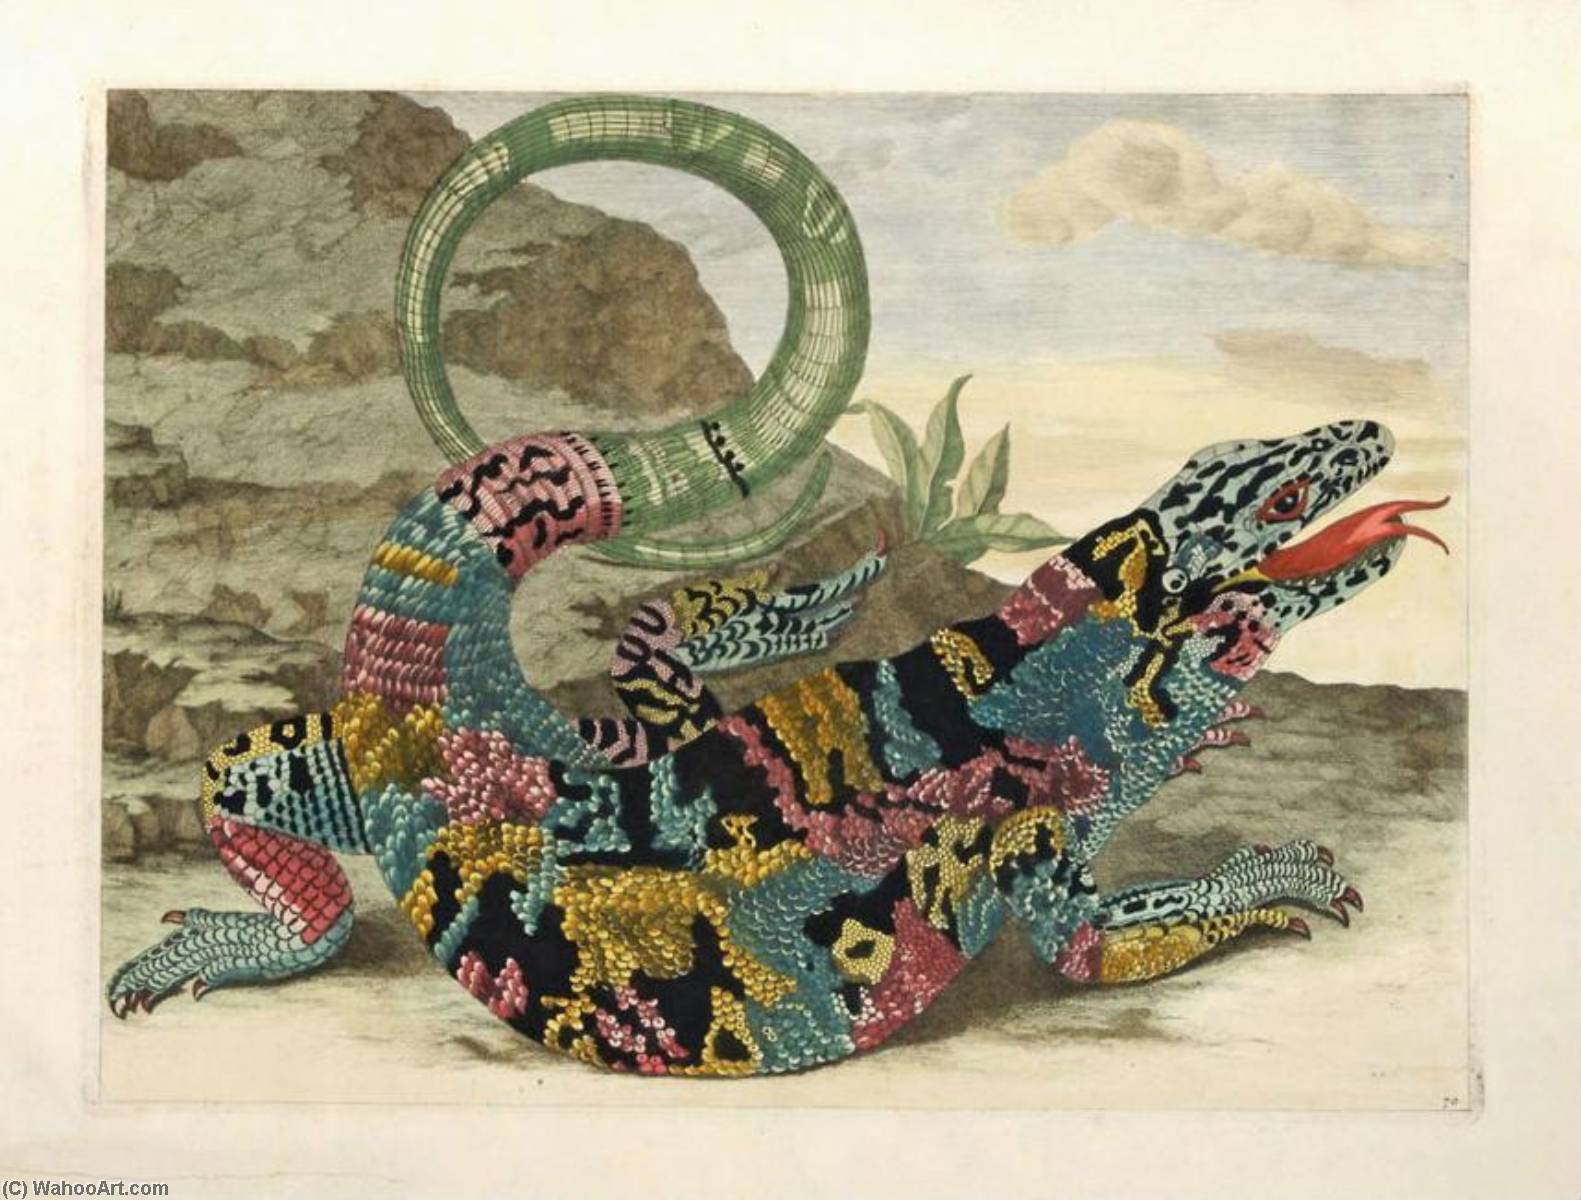 WikiOO.org - Encyclopedia of Fine Arts - Maalaus, taideteos Maria Sibylla Merian - Lizard